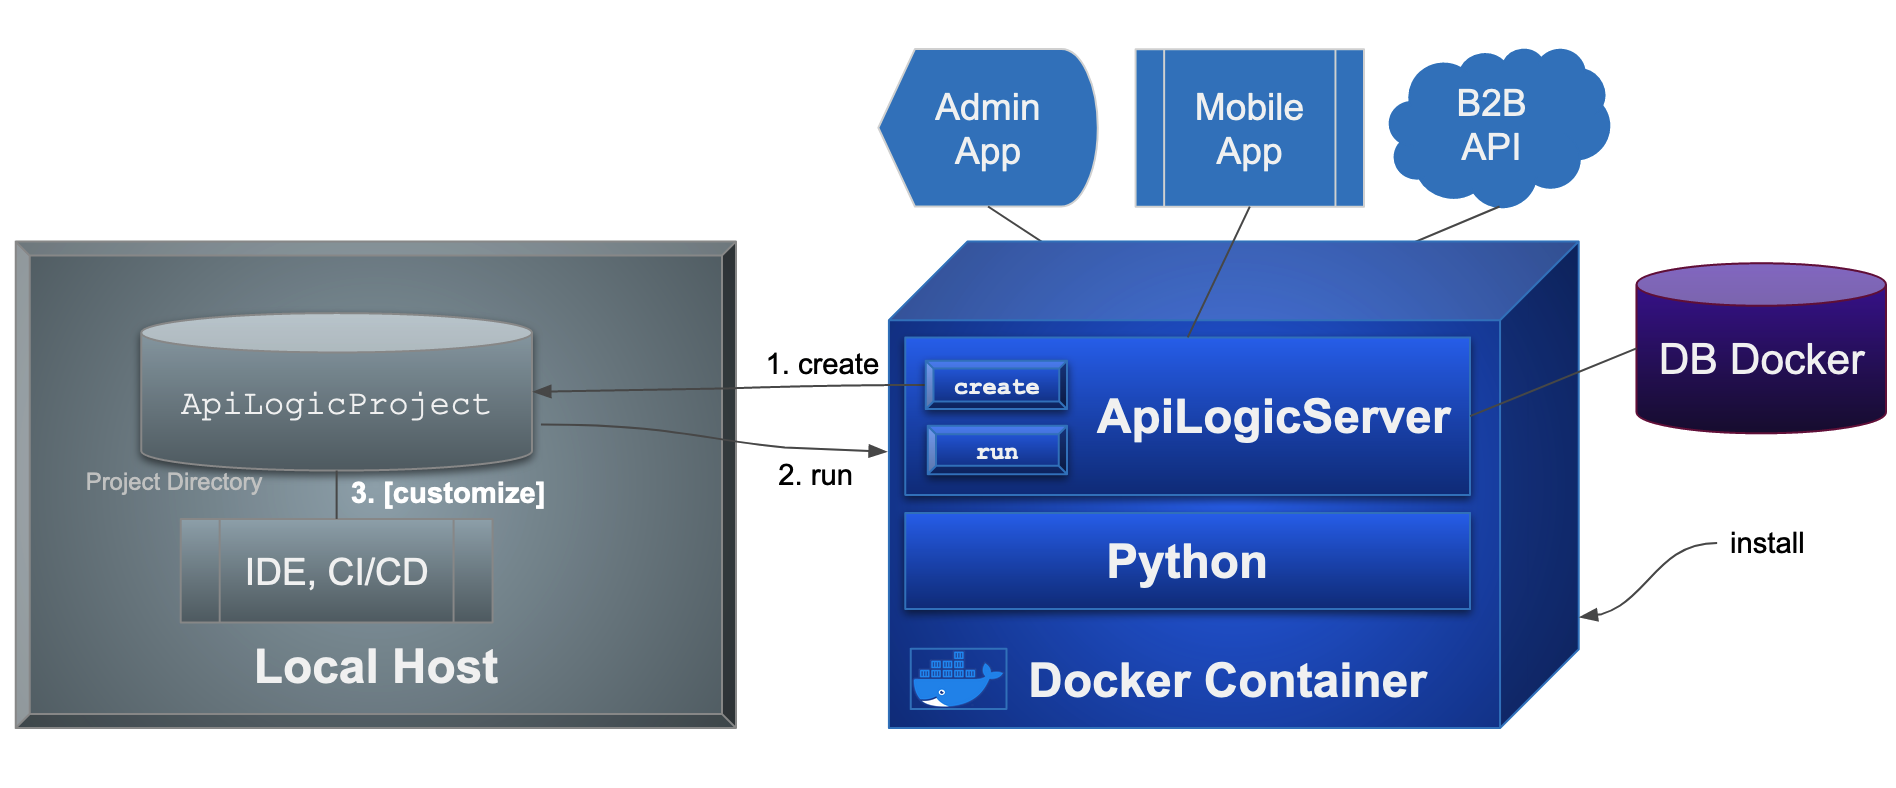 Docker Create run